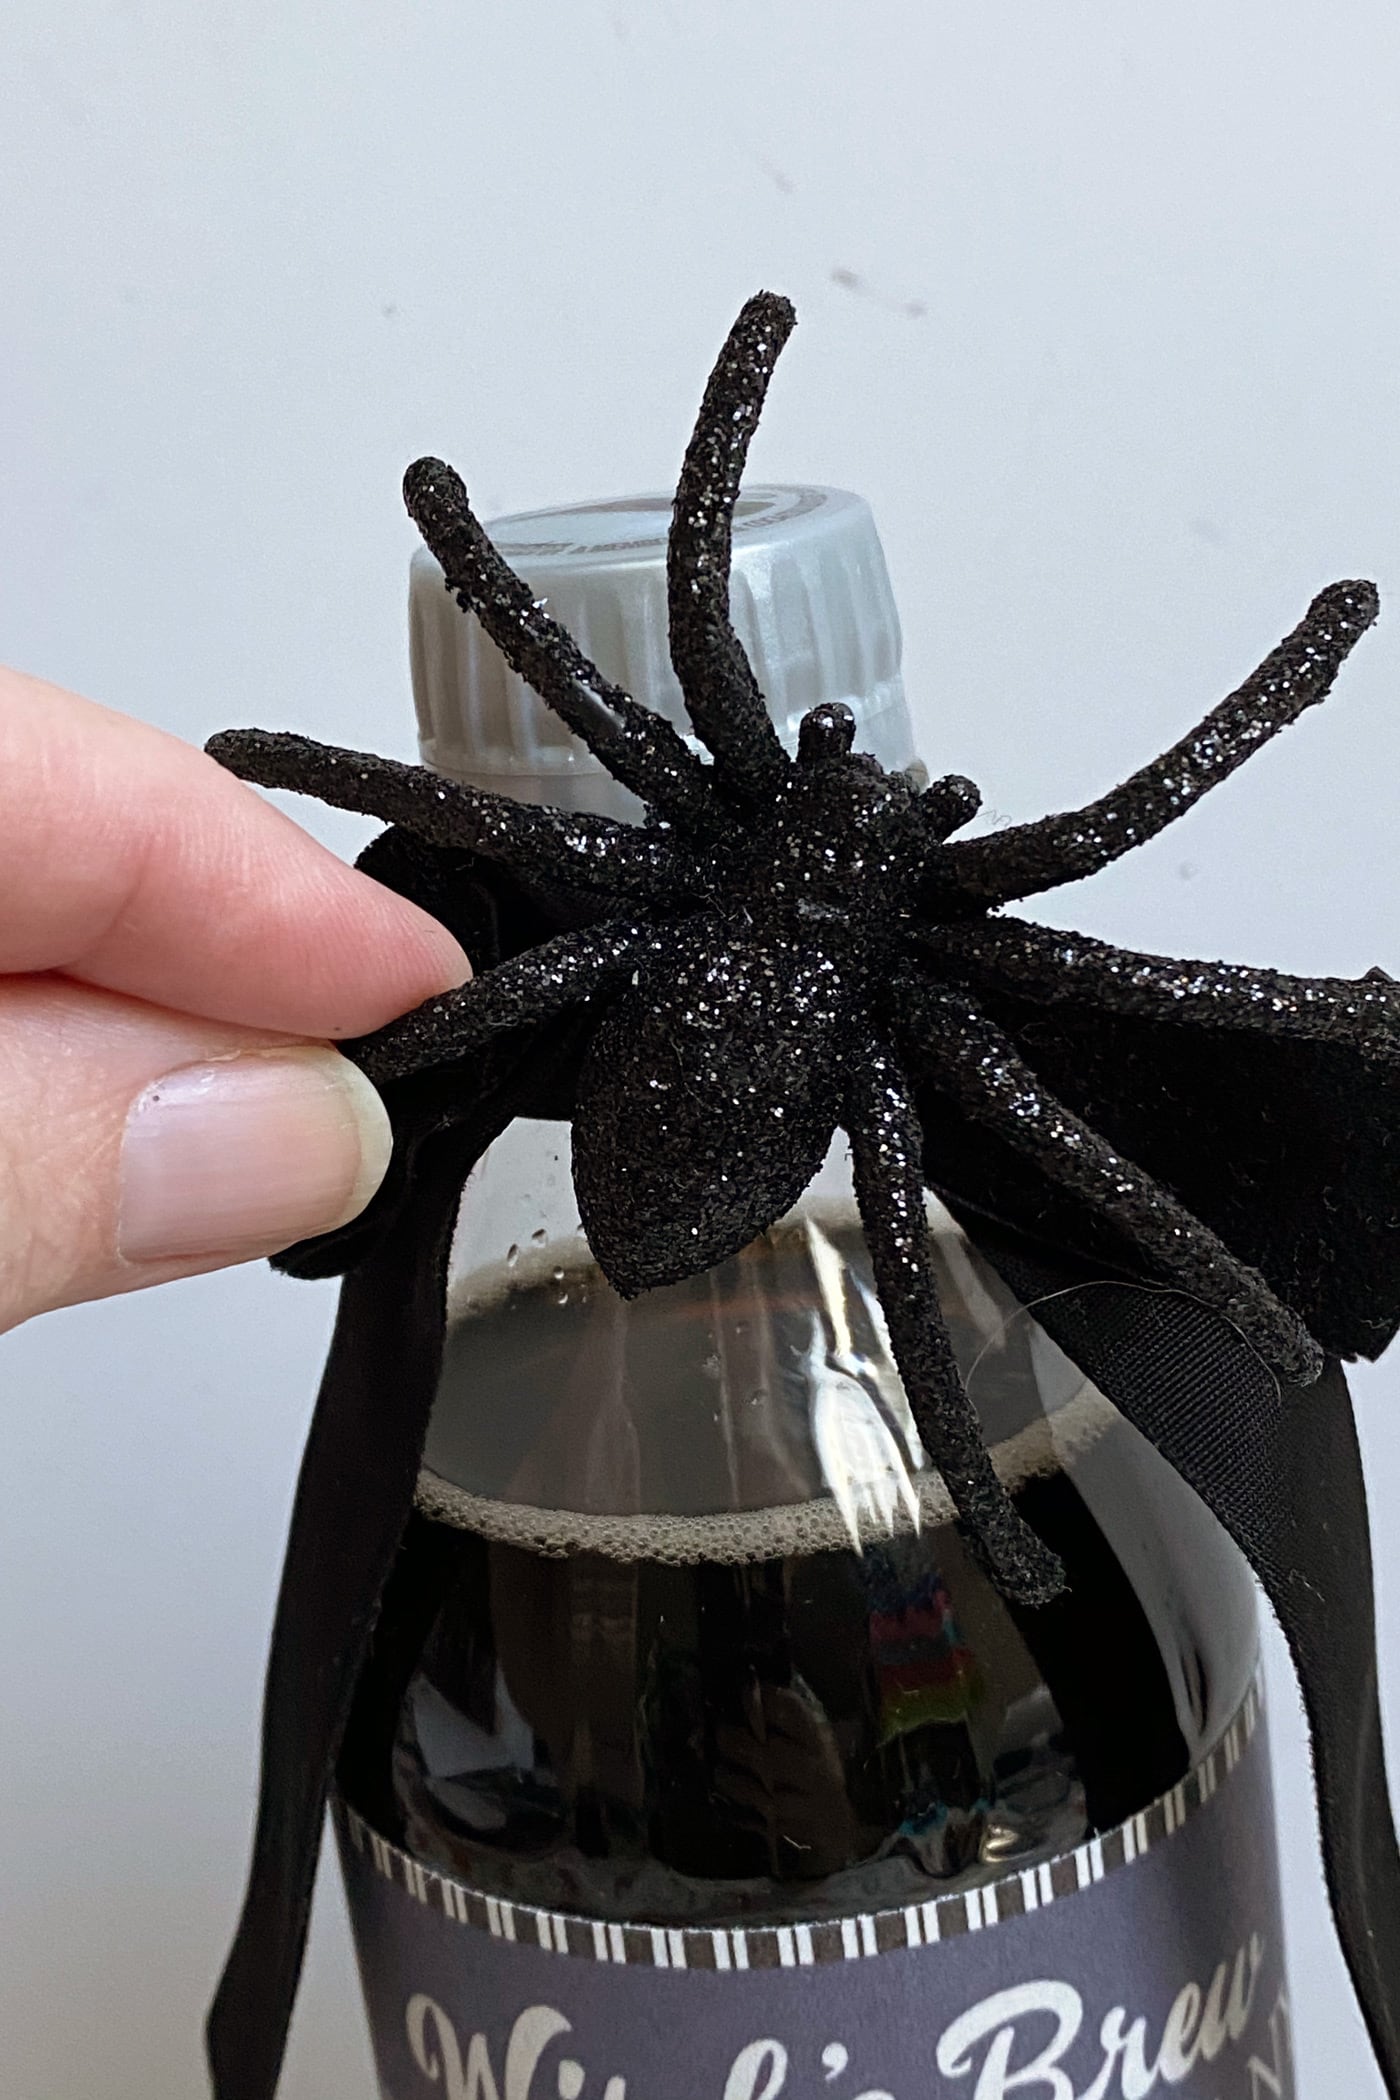 Tampilan jarak dekat dari laba-laba berkilau hitam pada botol soda